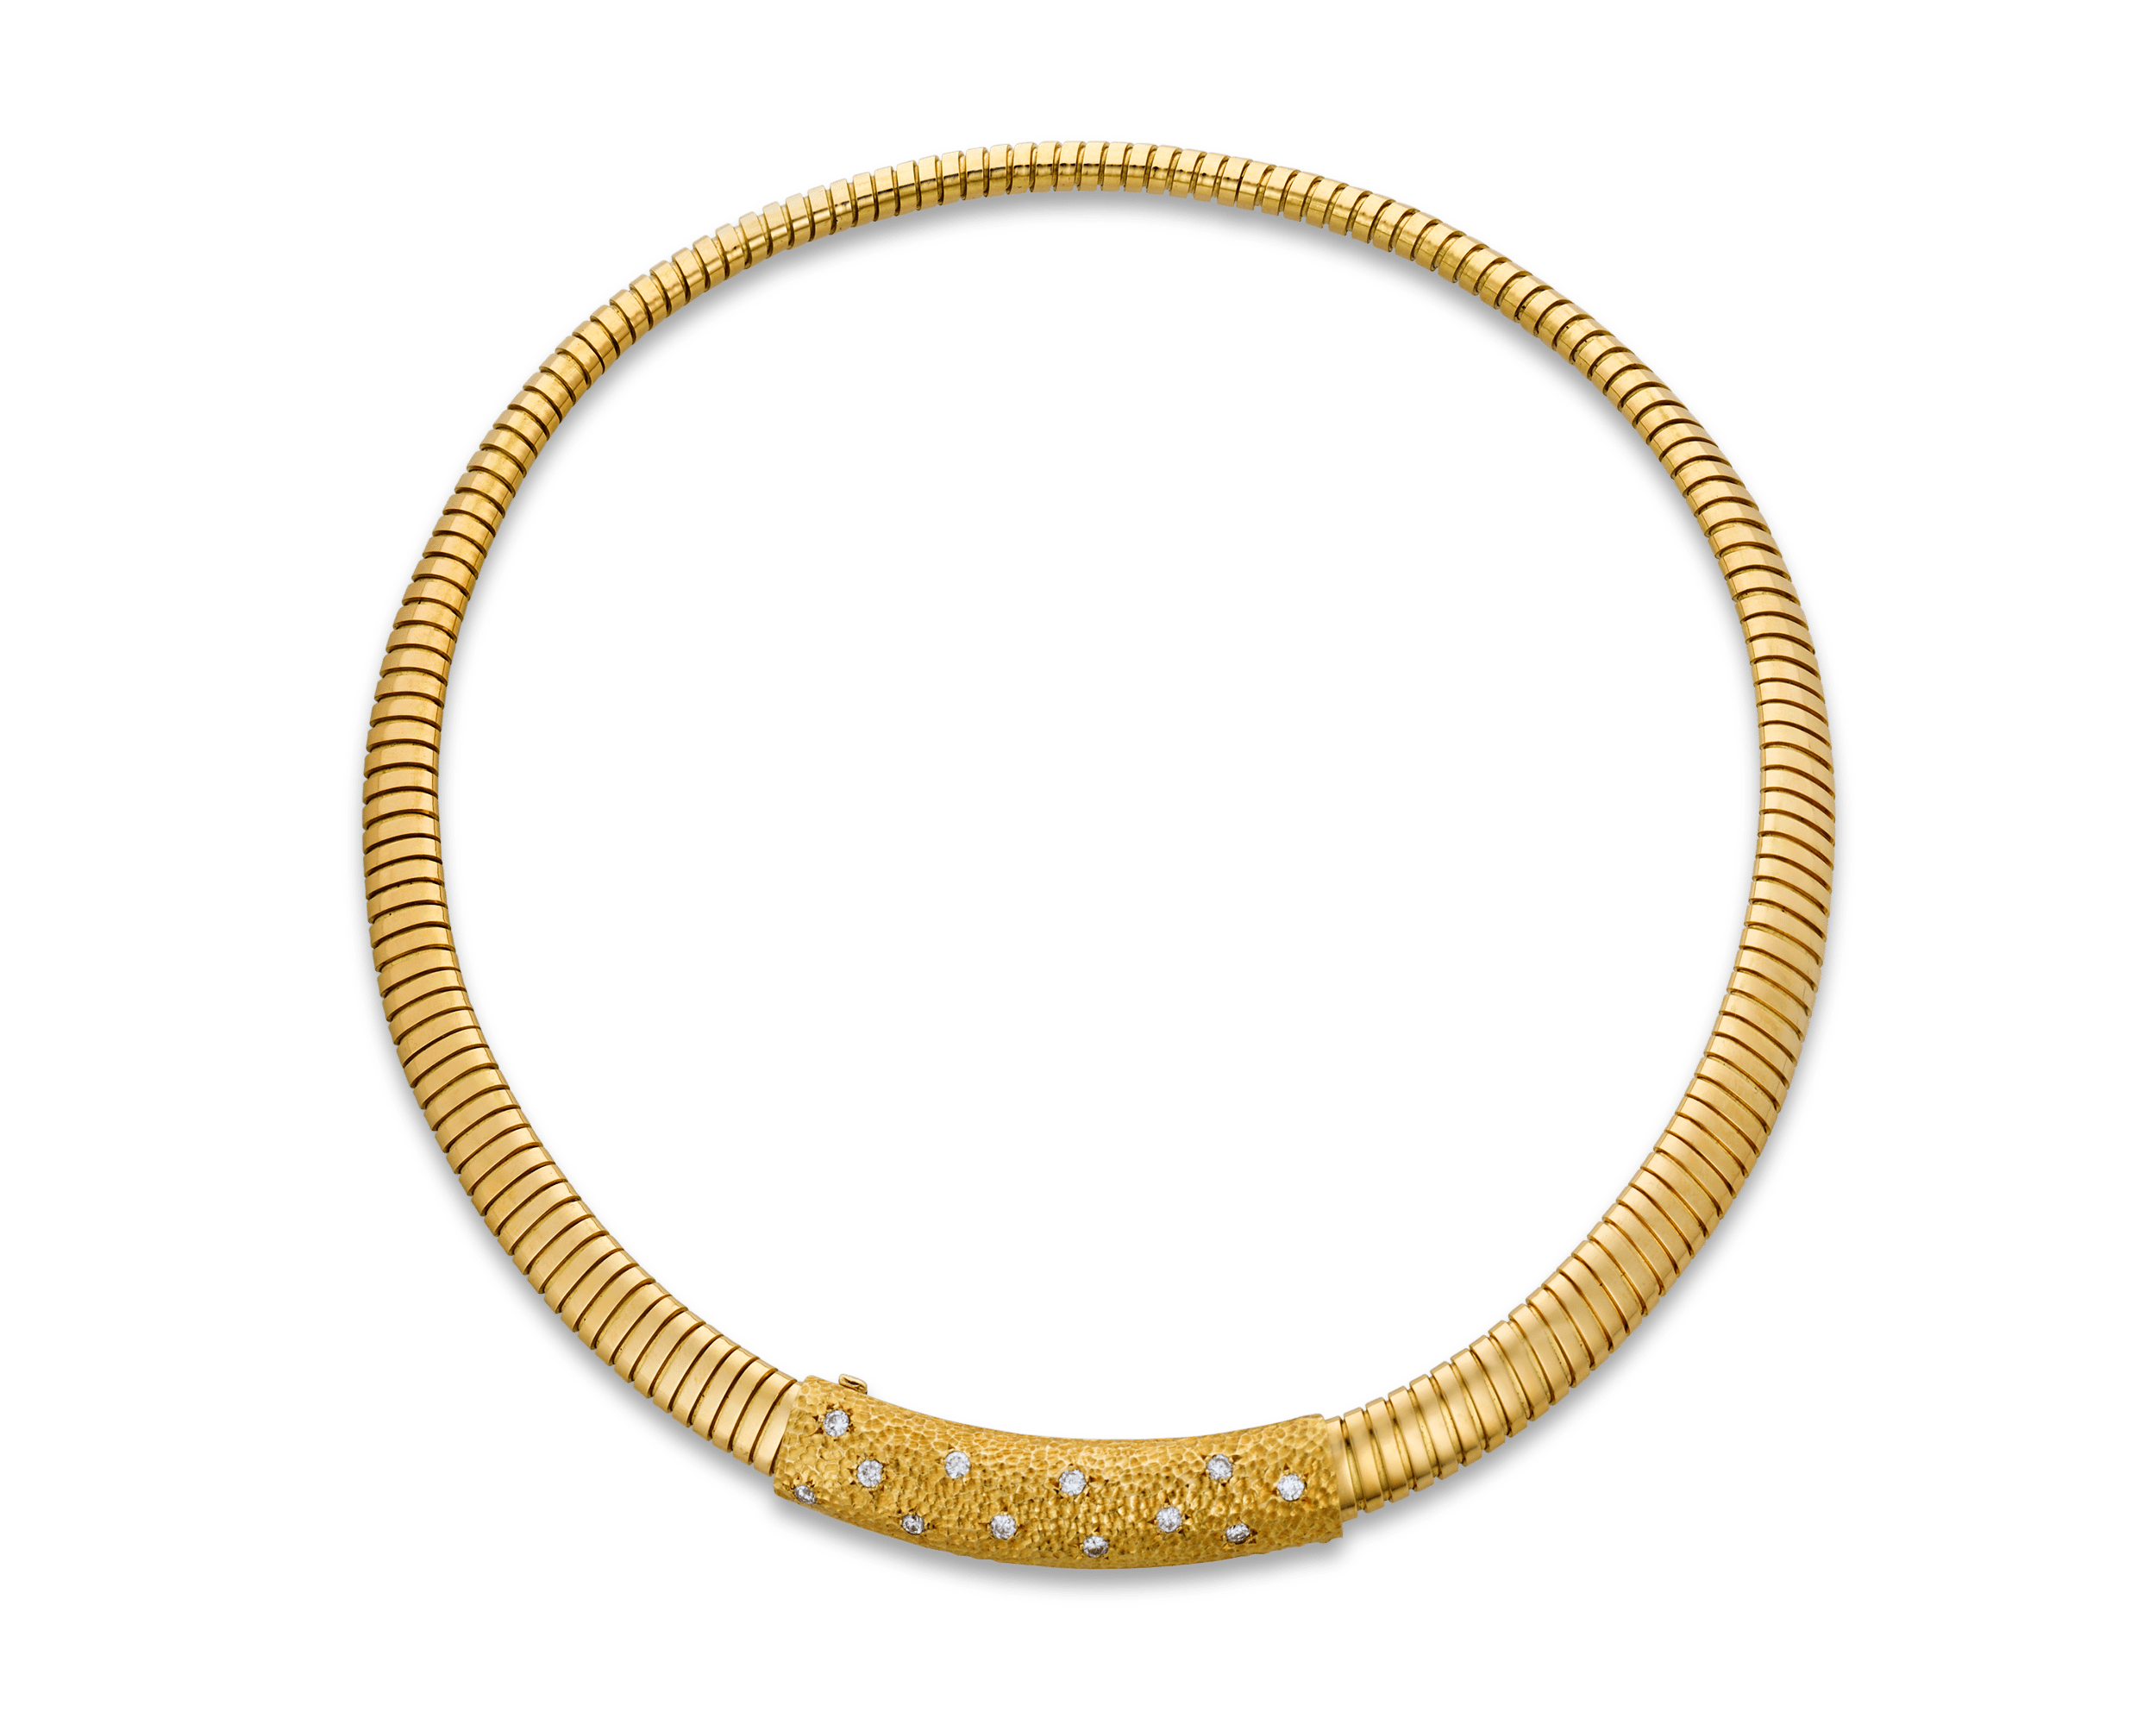 Van Cleef & Arpels Tubogas Gold Necklace